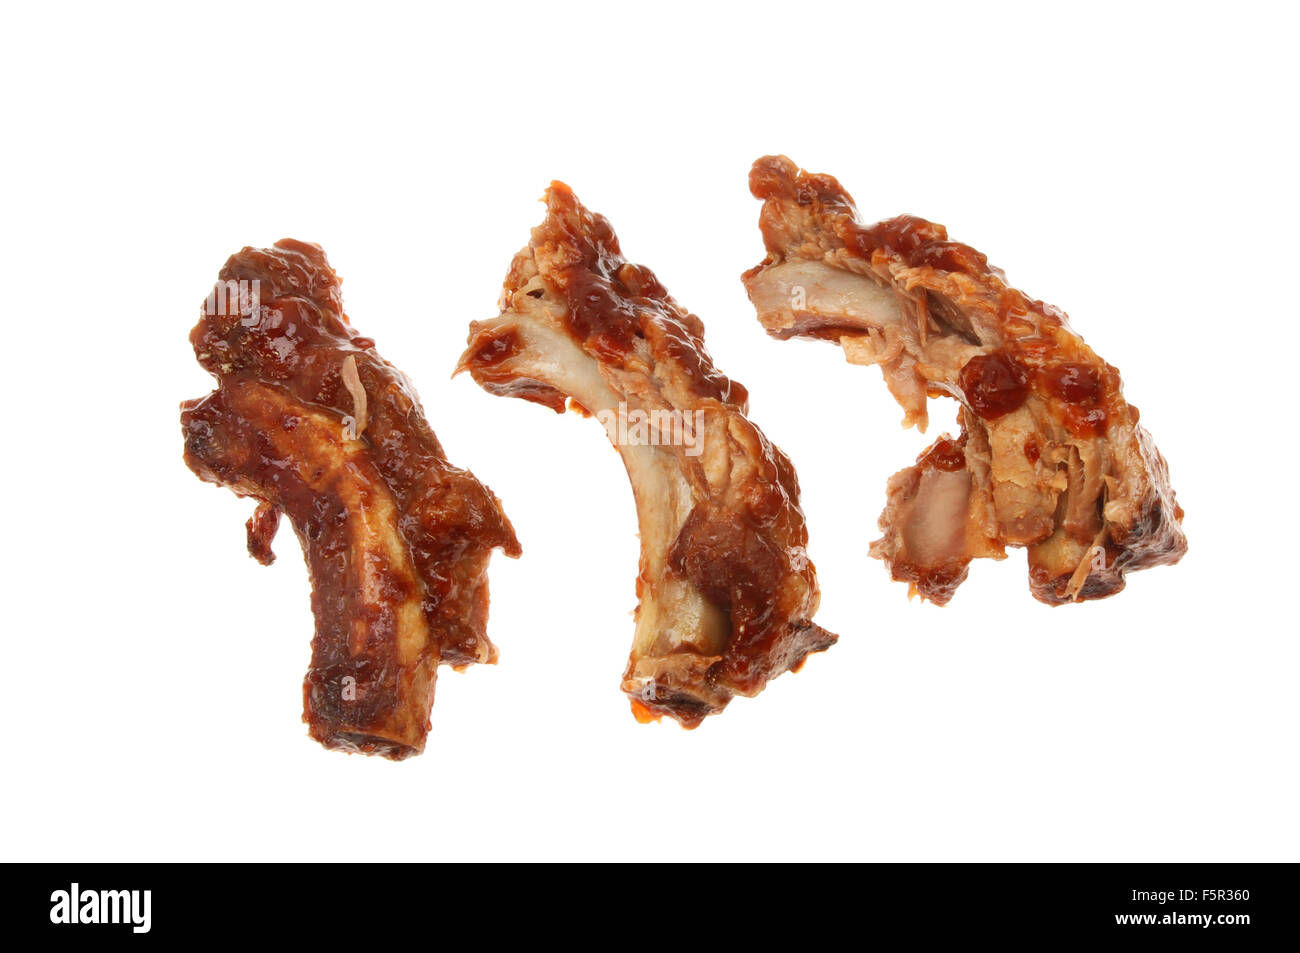 Costillas de cerdo con salsa barbacoa aislado contra un blanco Foto de stock